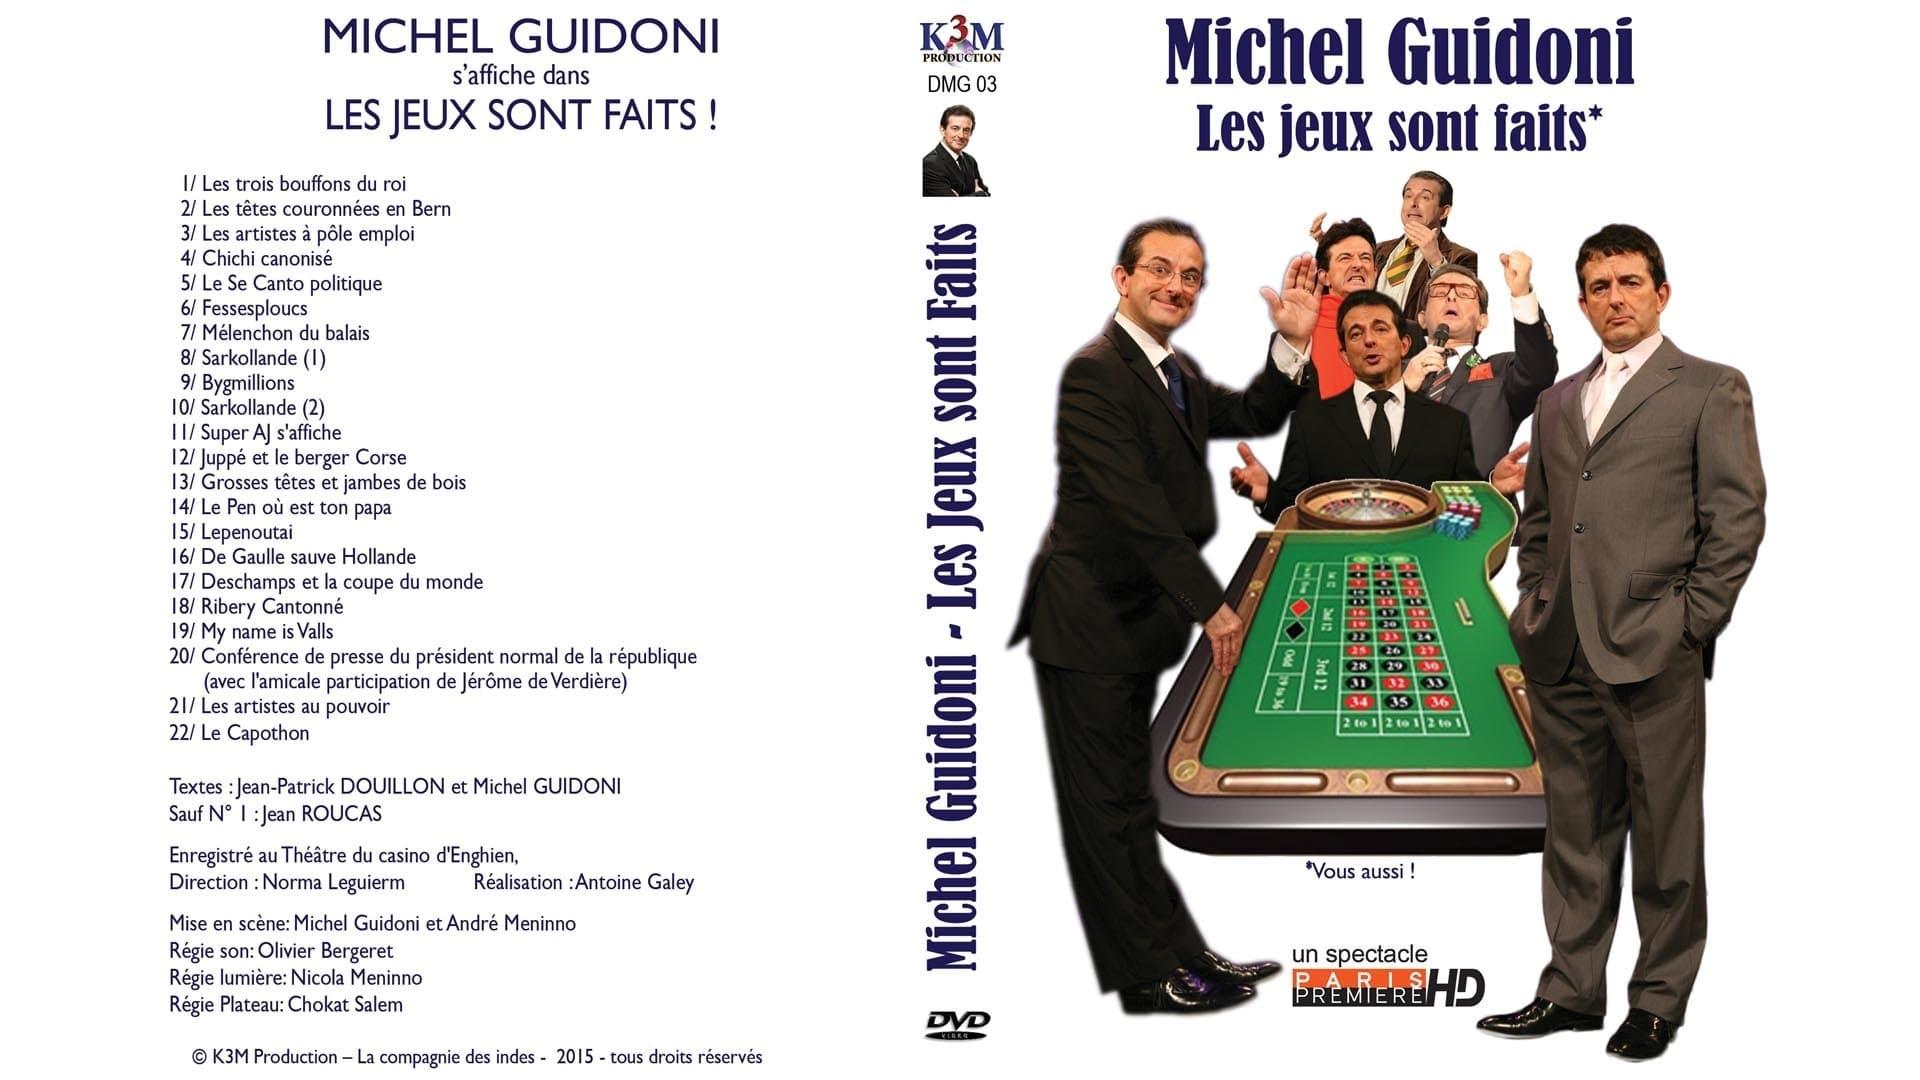 Michel Guidoni - Les jeux sont faits backdrop